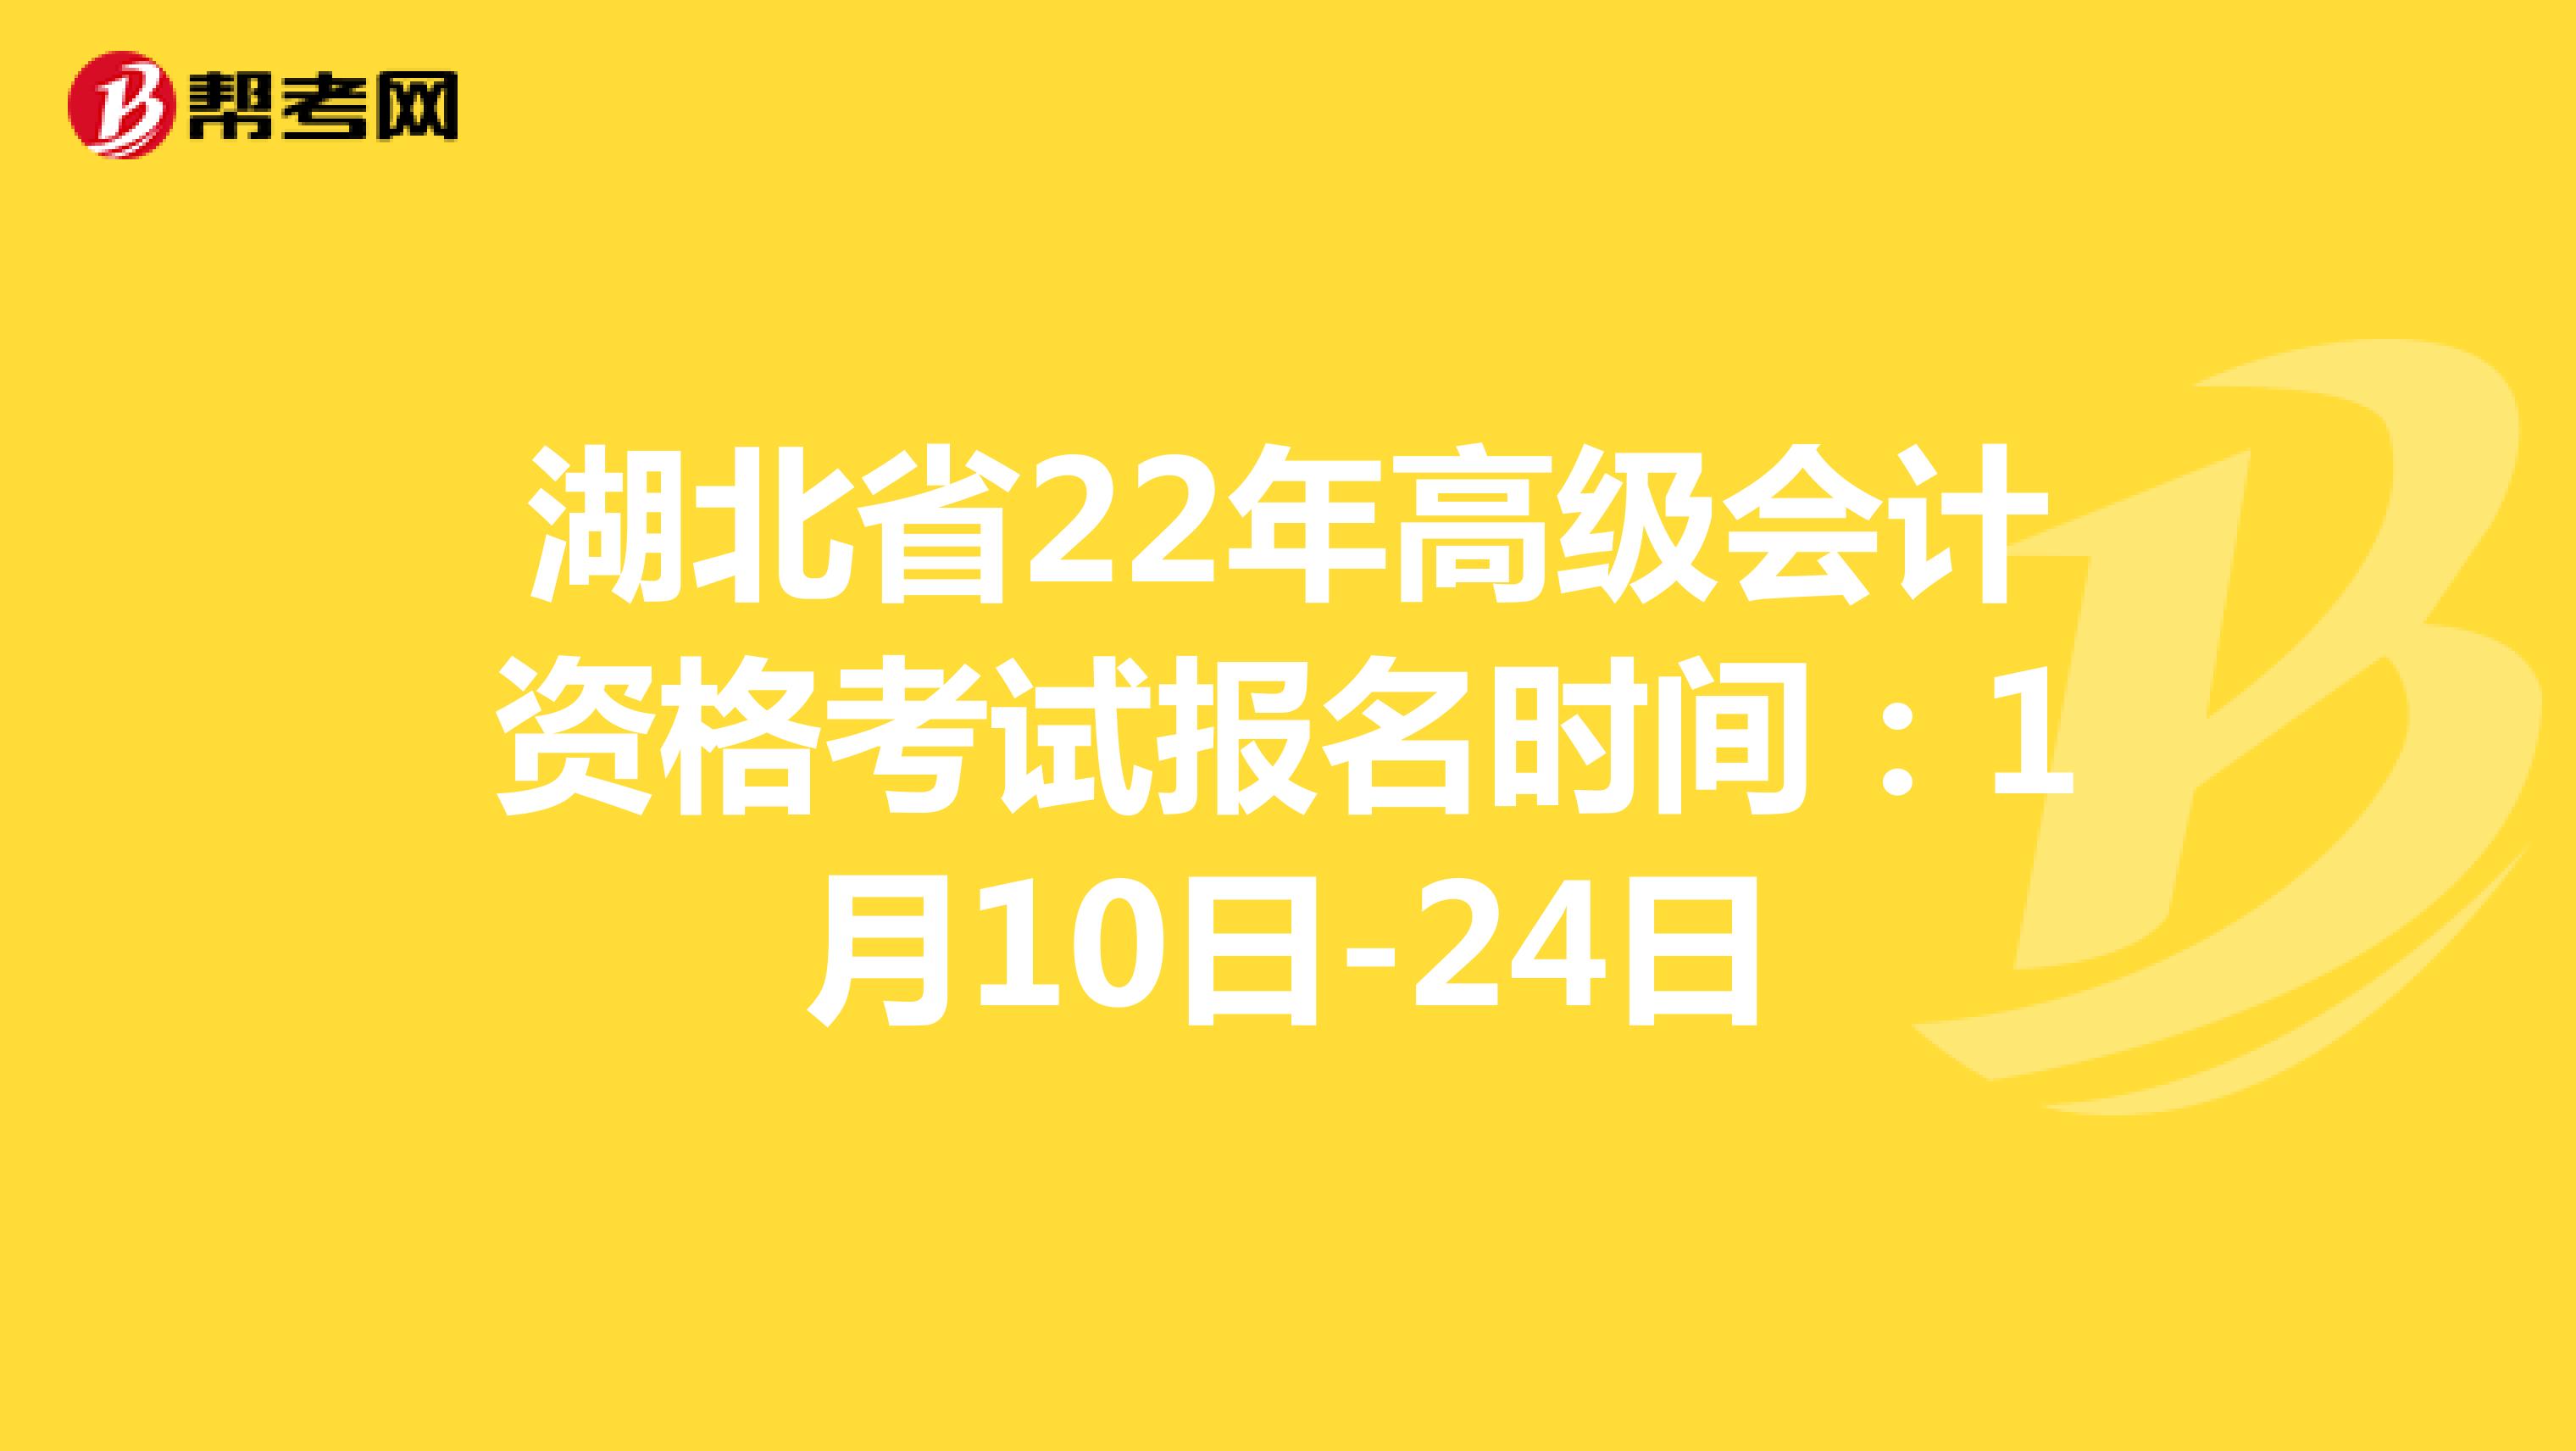 湖北省22年高级会计资格考试报名时间：1月10日-24日